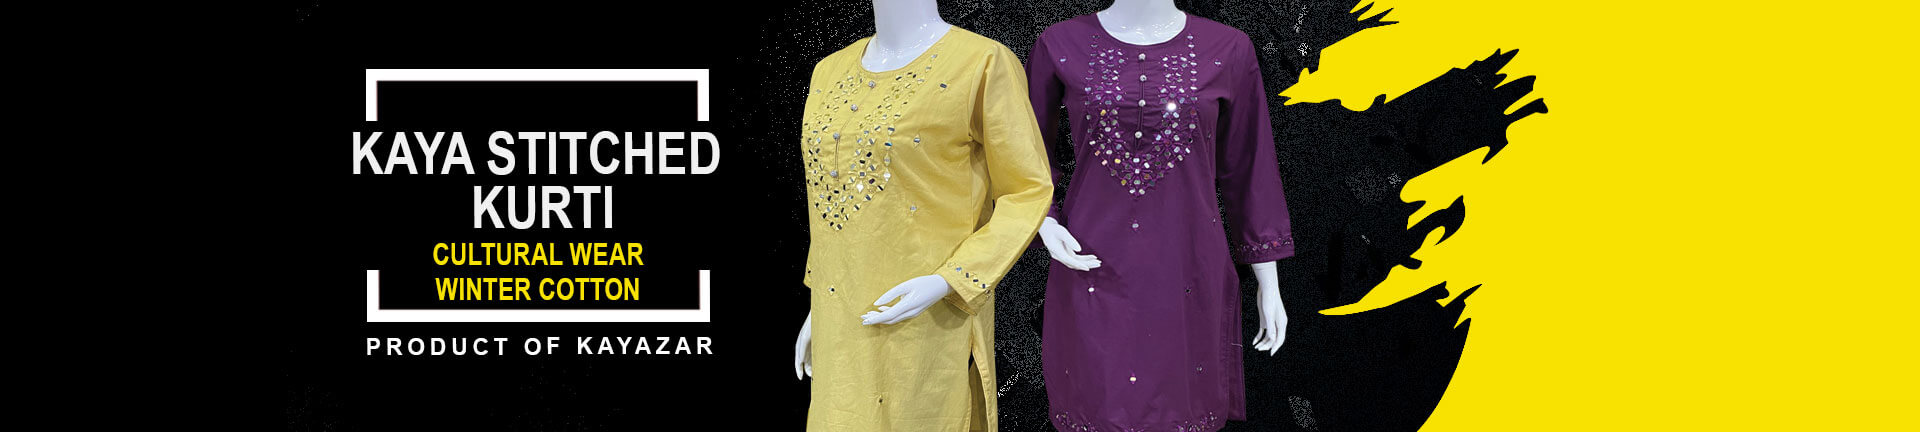 Buy Stitched Kurtis Winter Cotton Online in Pakistan - Kayazar